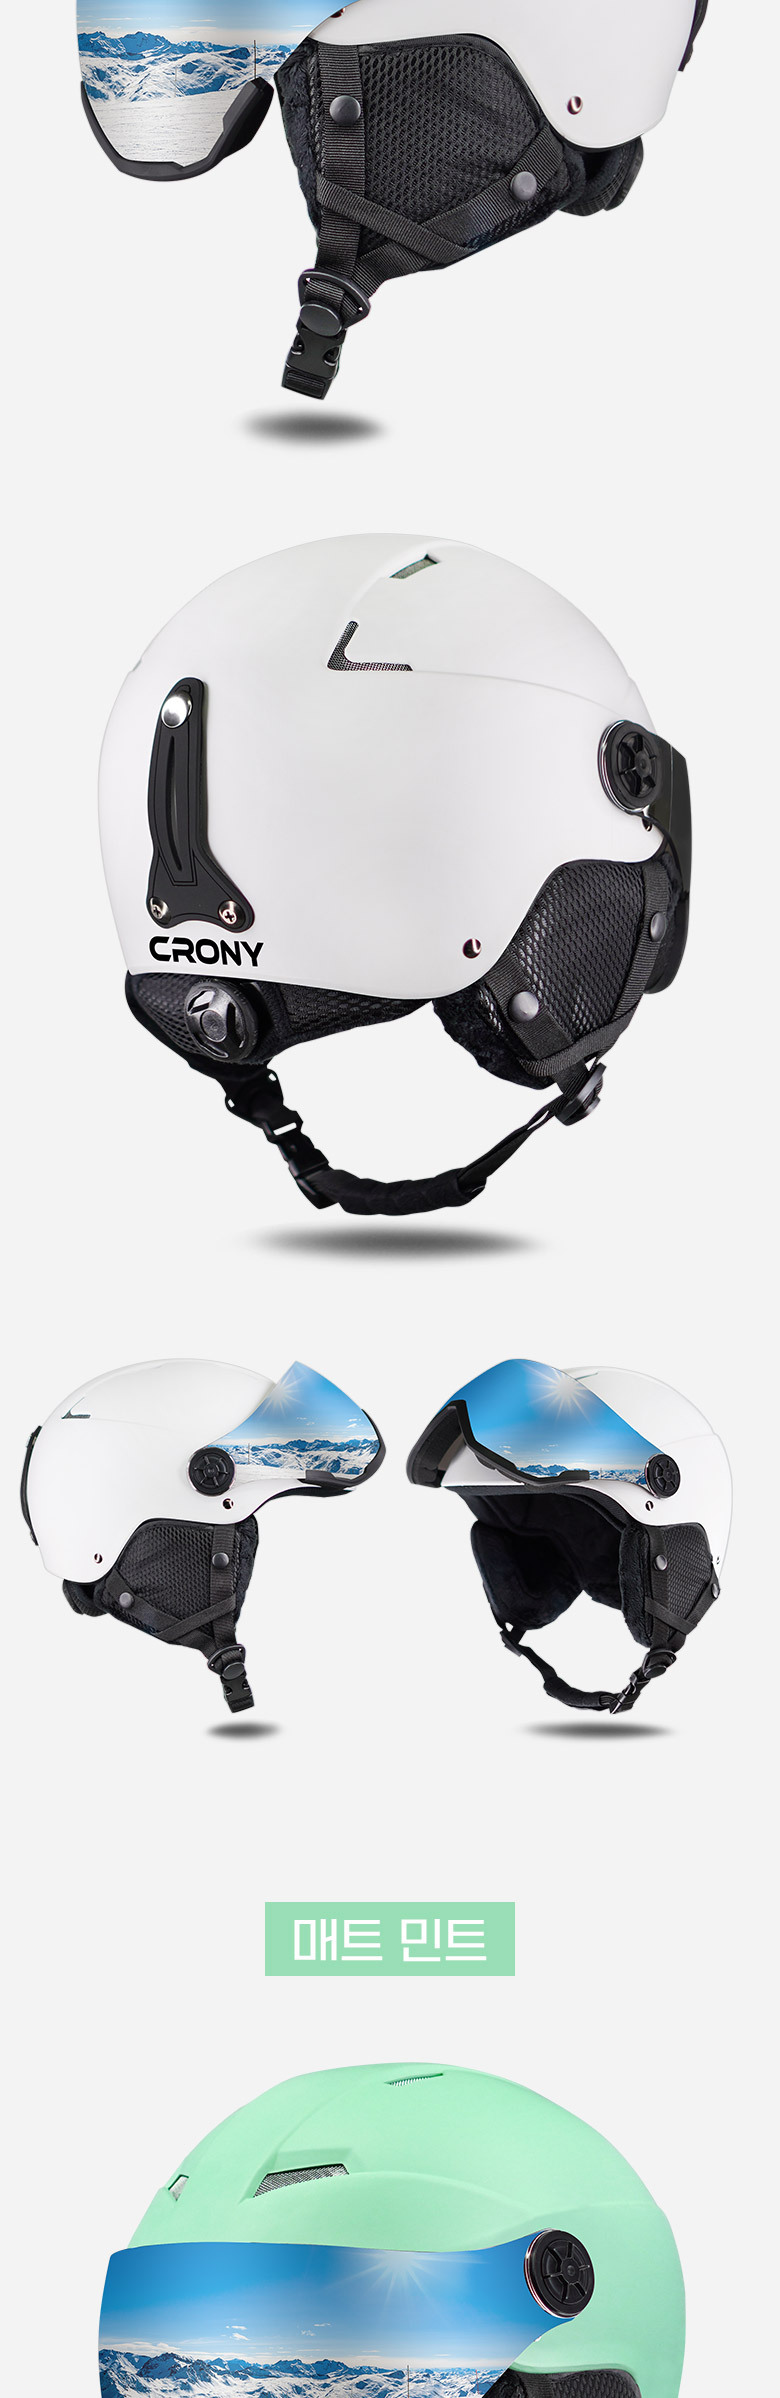 helmet_crony_ski_2_18.jpg